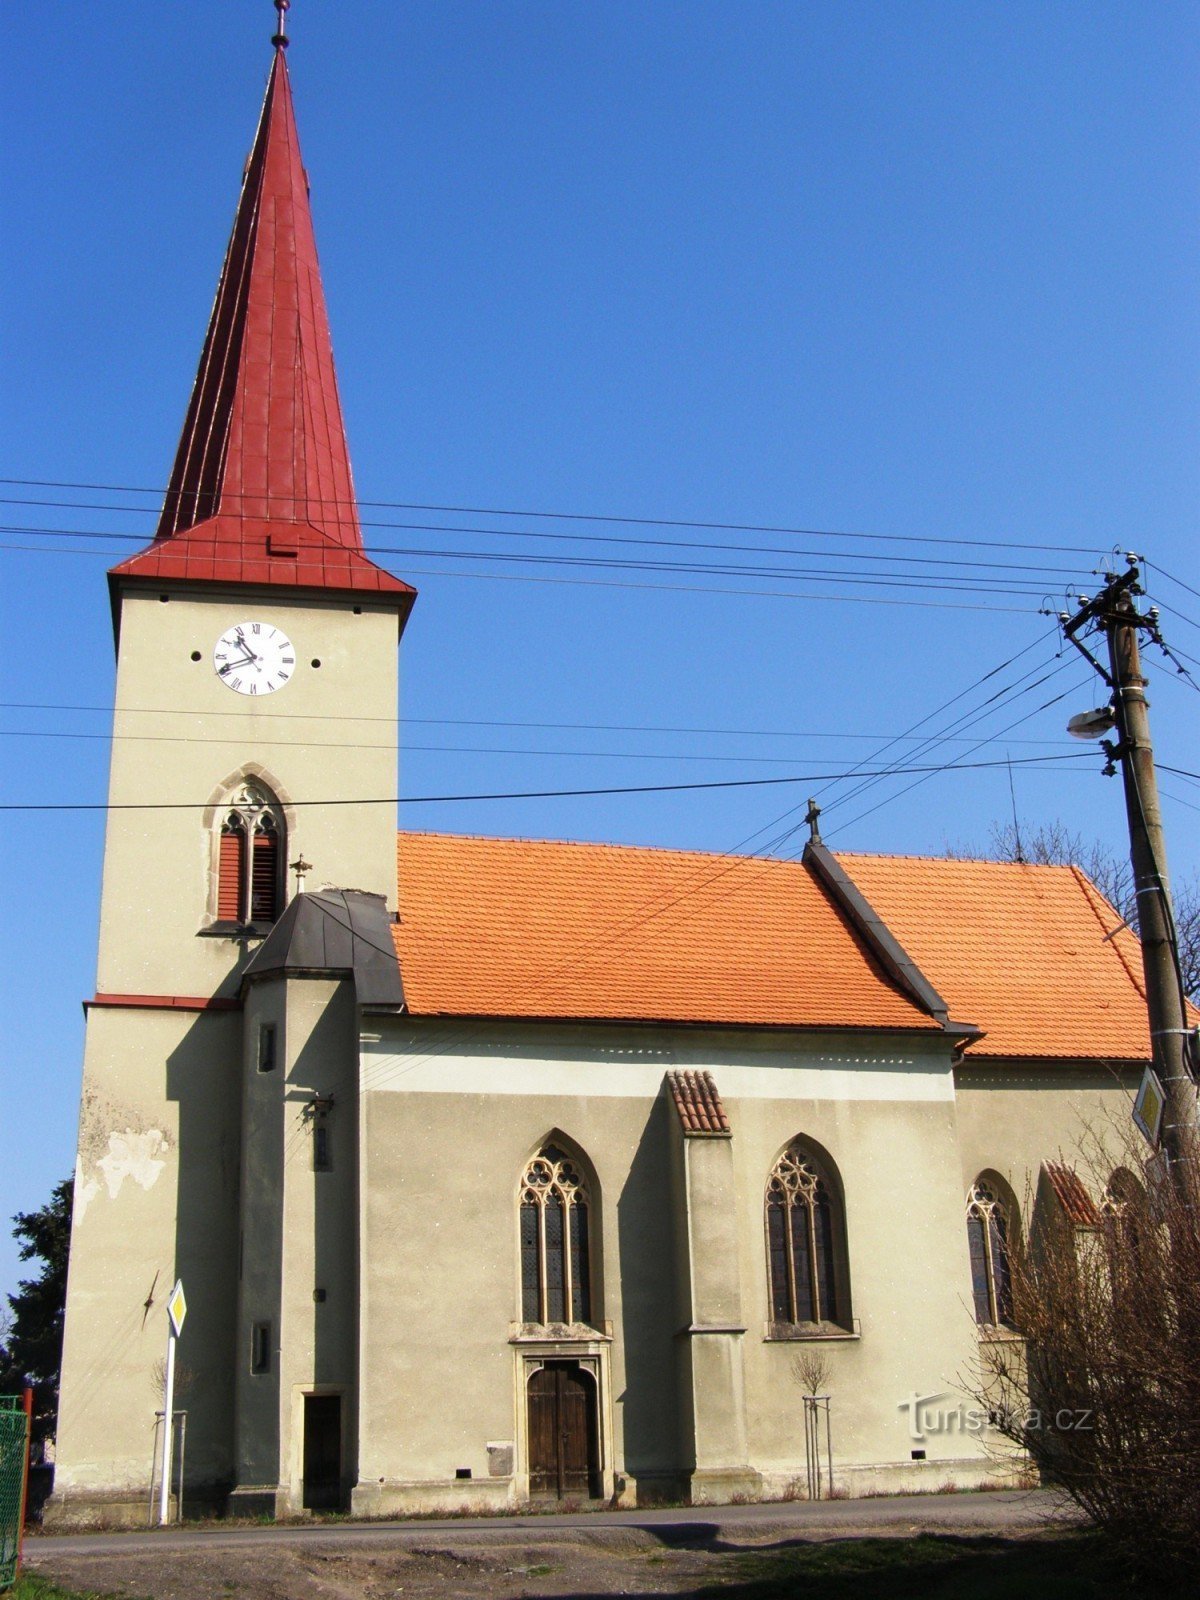 Kunětice - biserica Sf. Bartolomeu